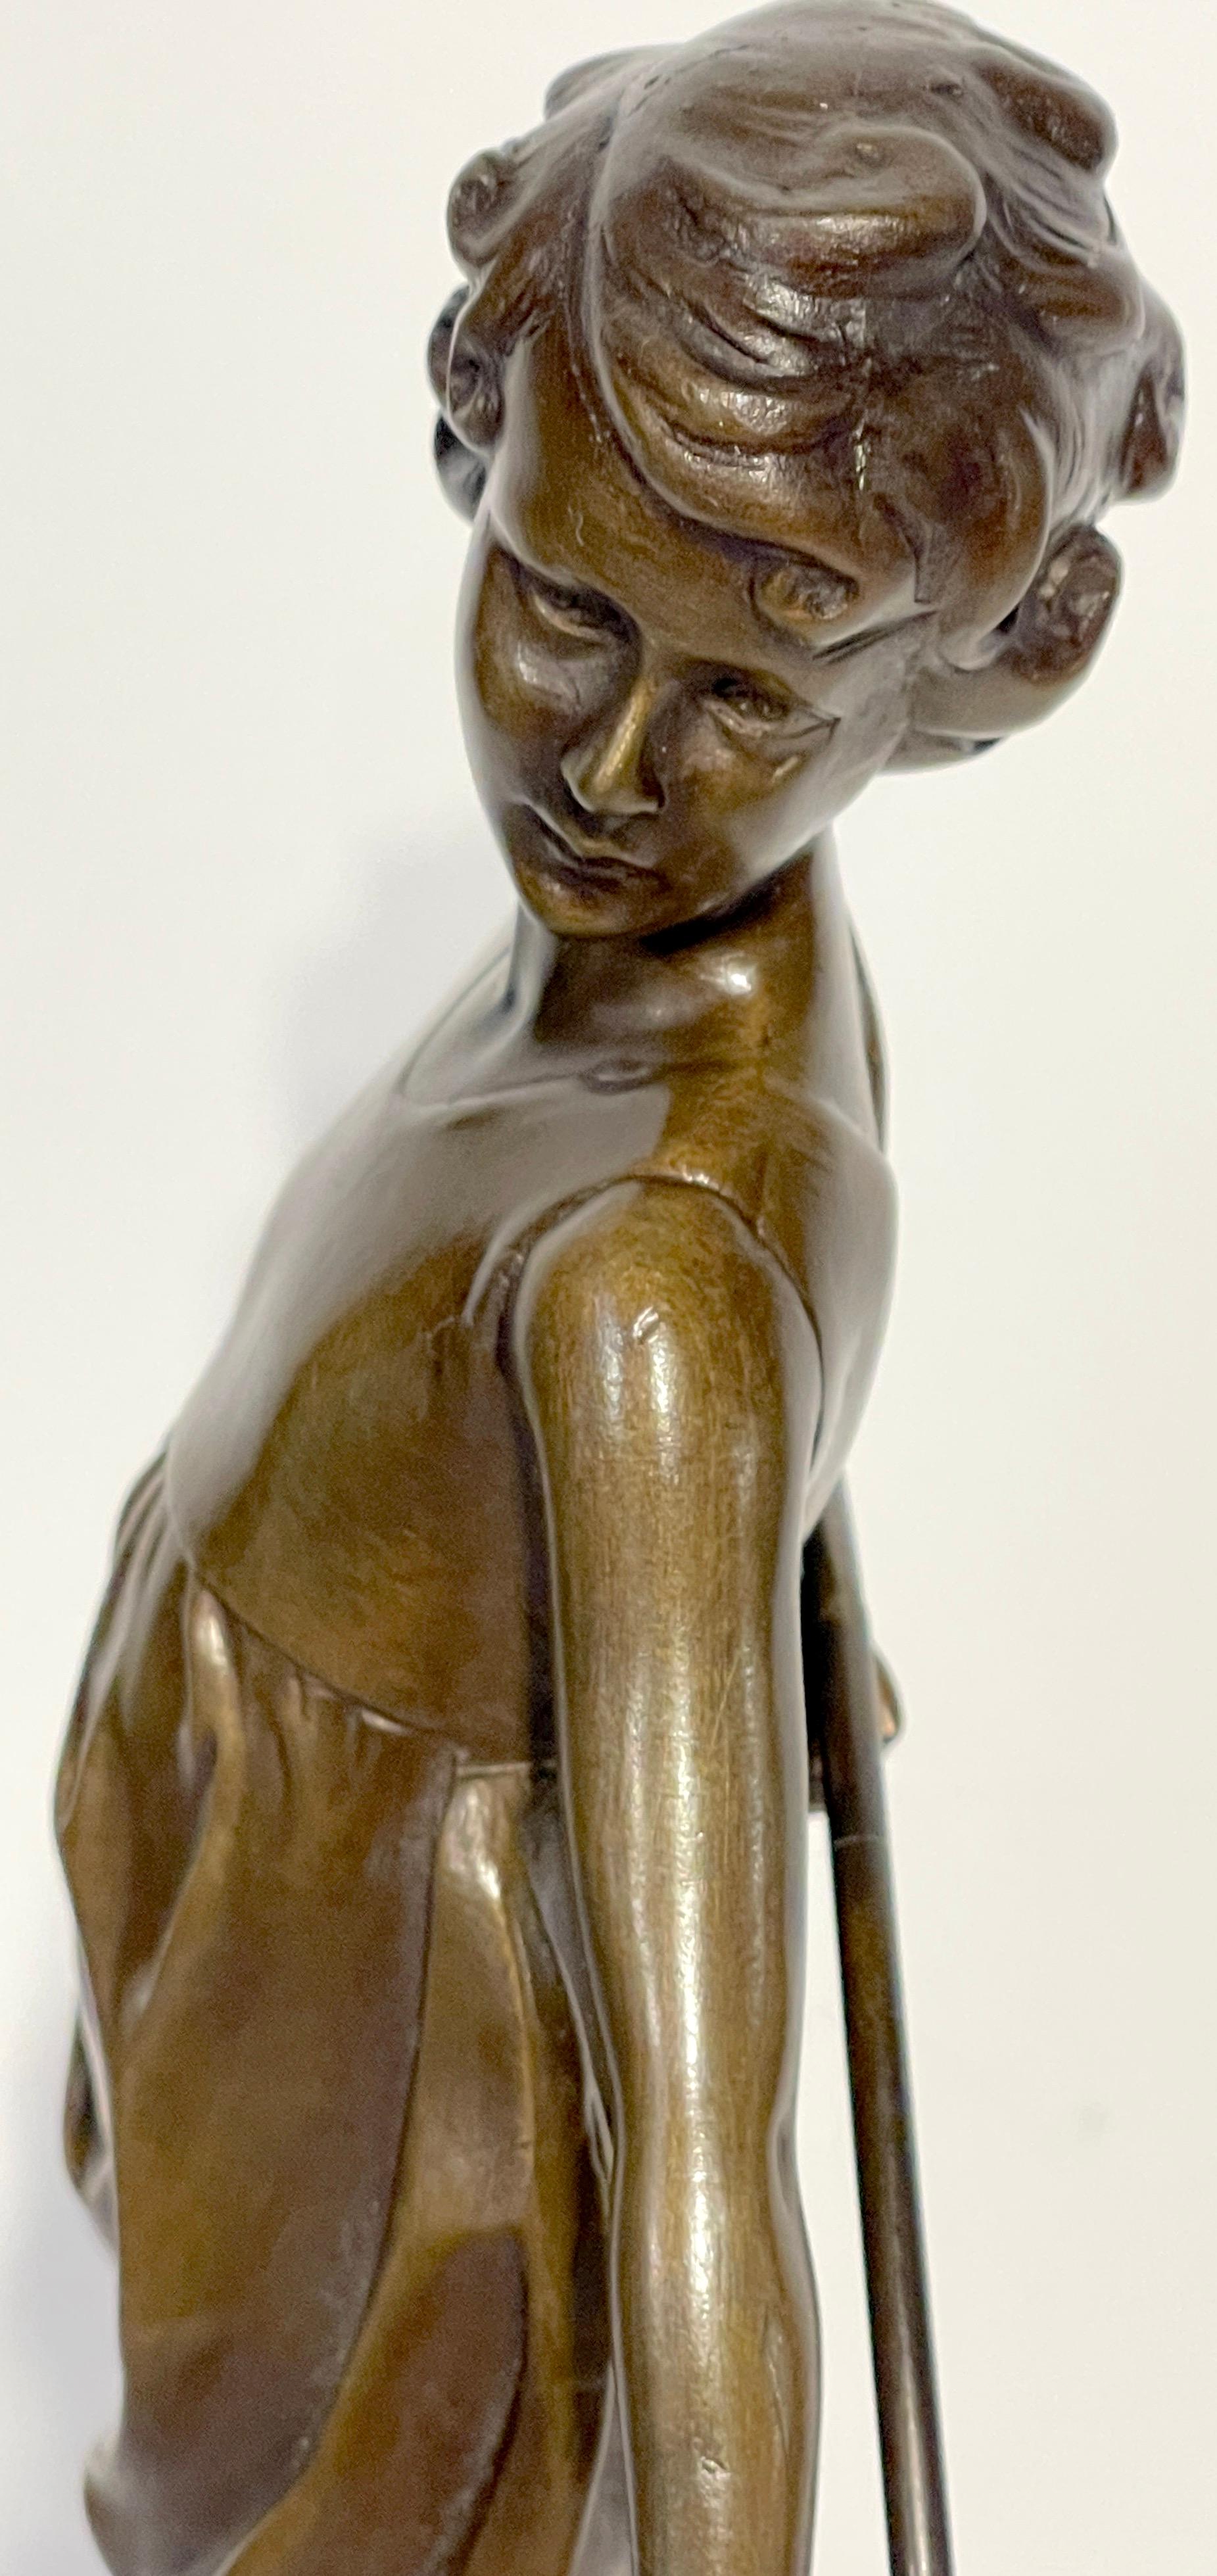 'Hoop Girl' Art Deco Bronze Sculpture Signed Ferdinand Preiss (1882-1943) For Sale 7